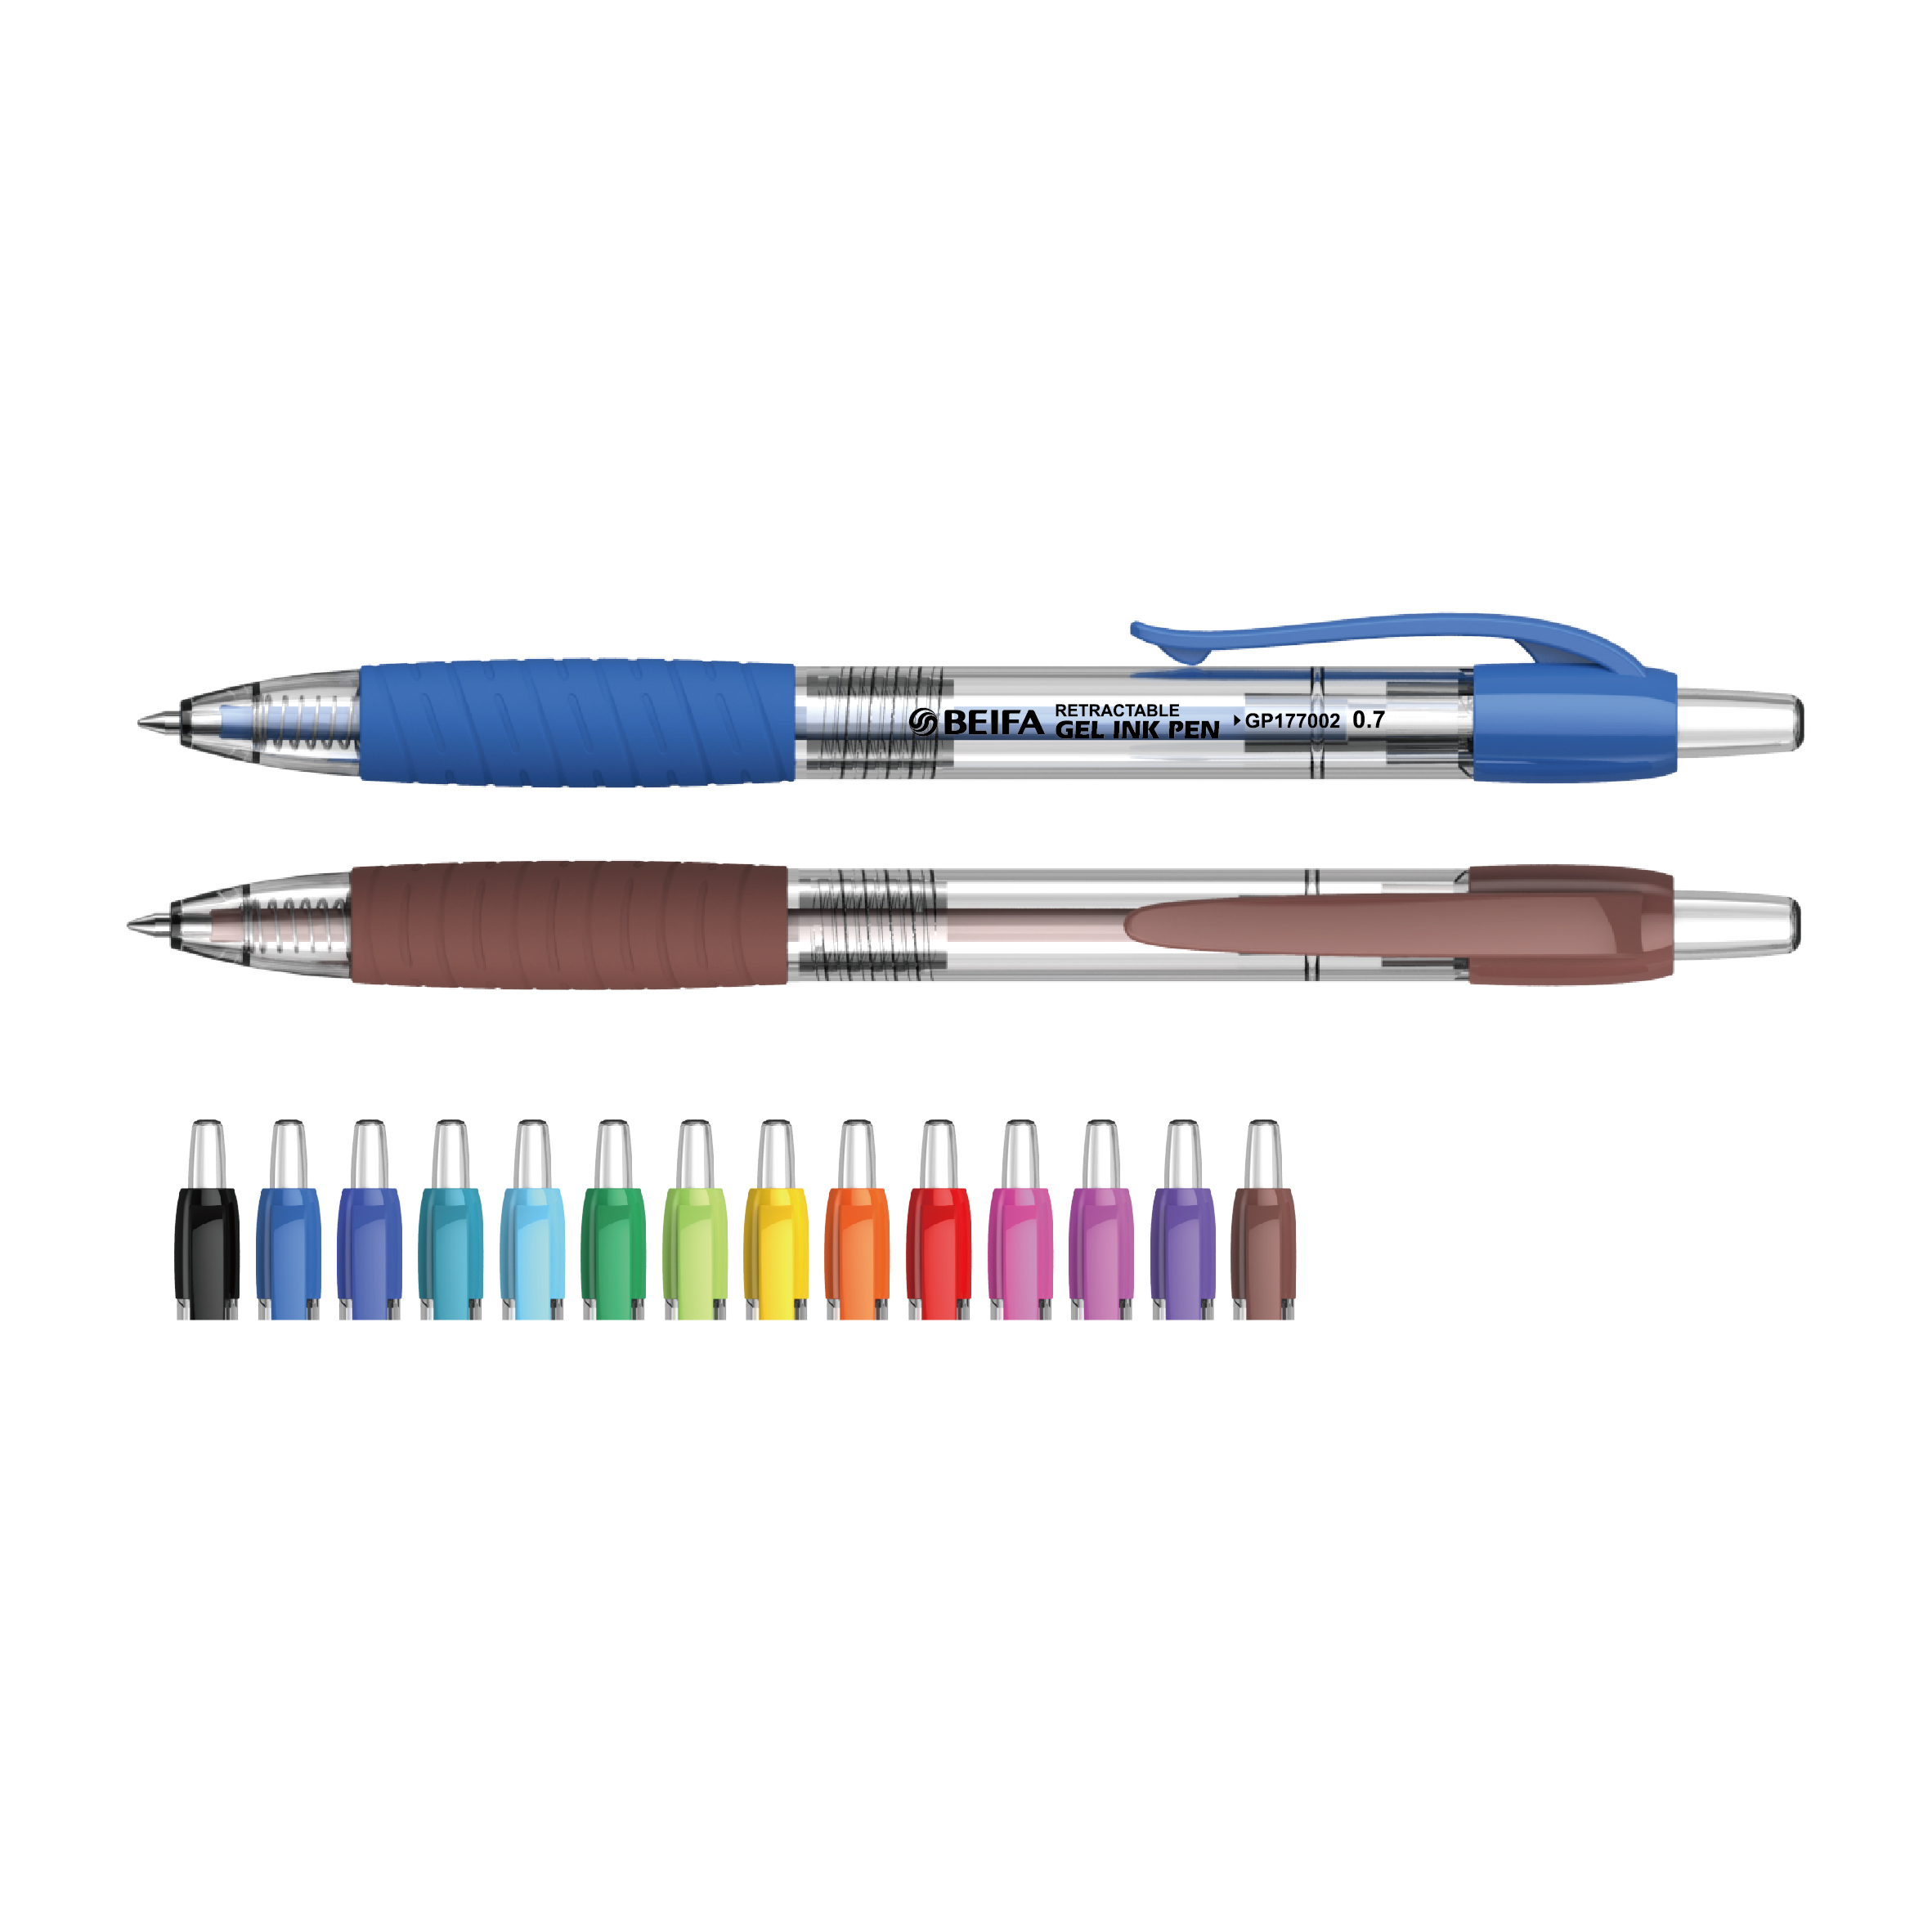 0.7&0.5mm No Cap Retractable Gel Pen with Multi Color Ink